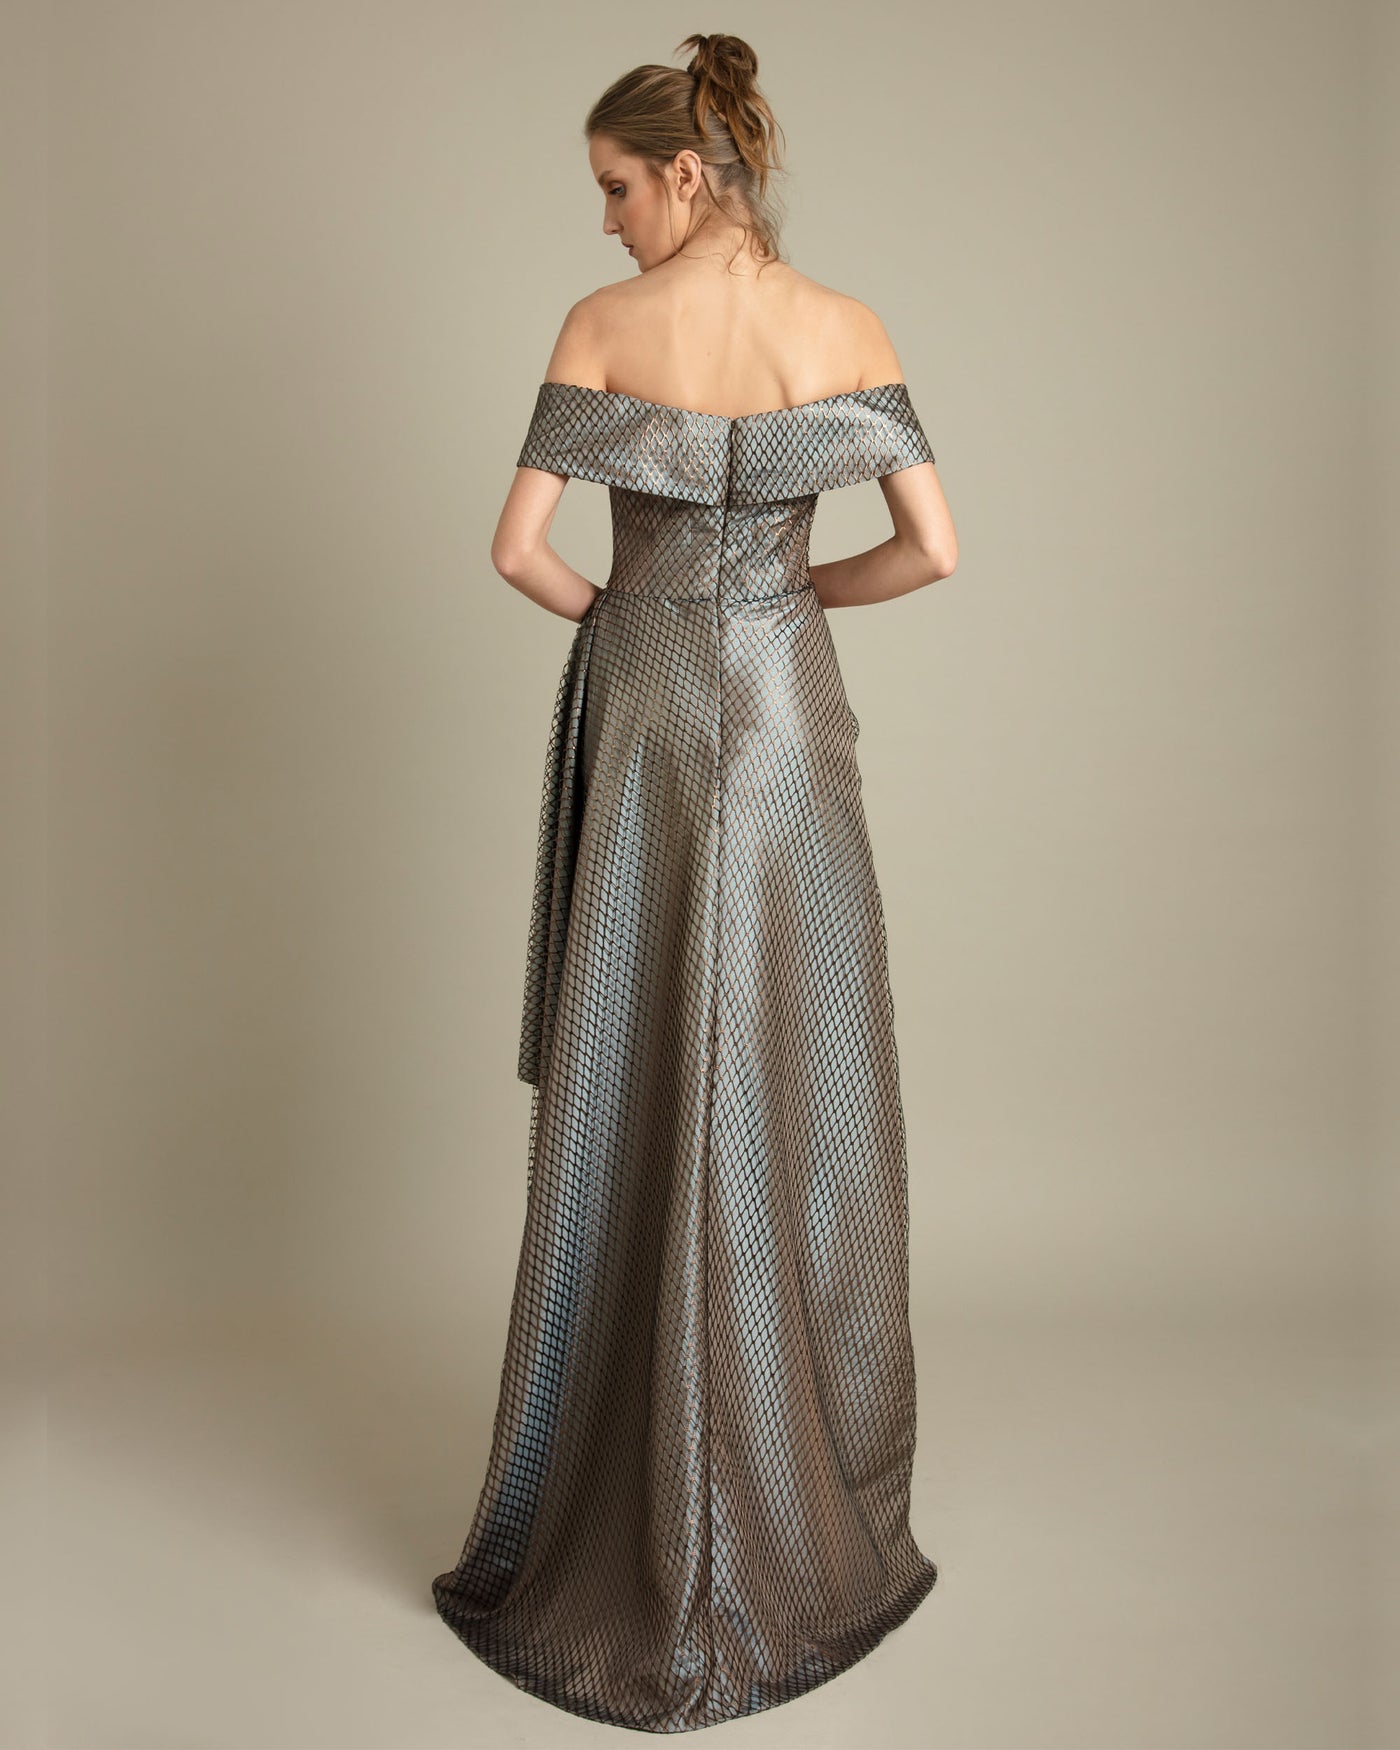 Off-Shoulders Taupe Fishnet Dress